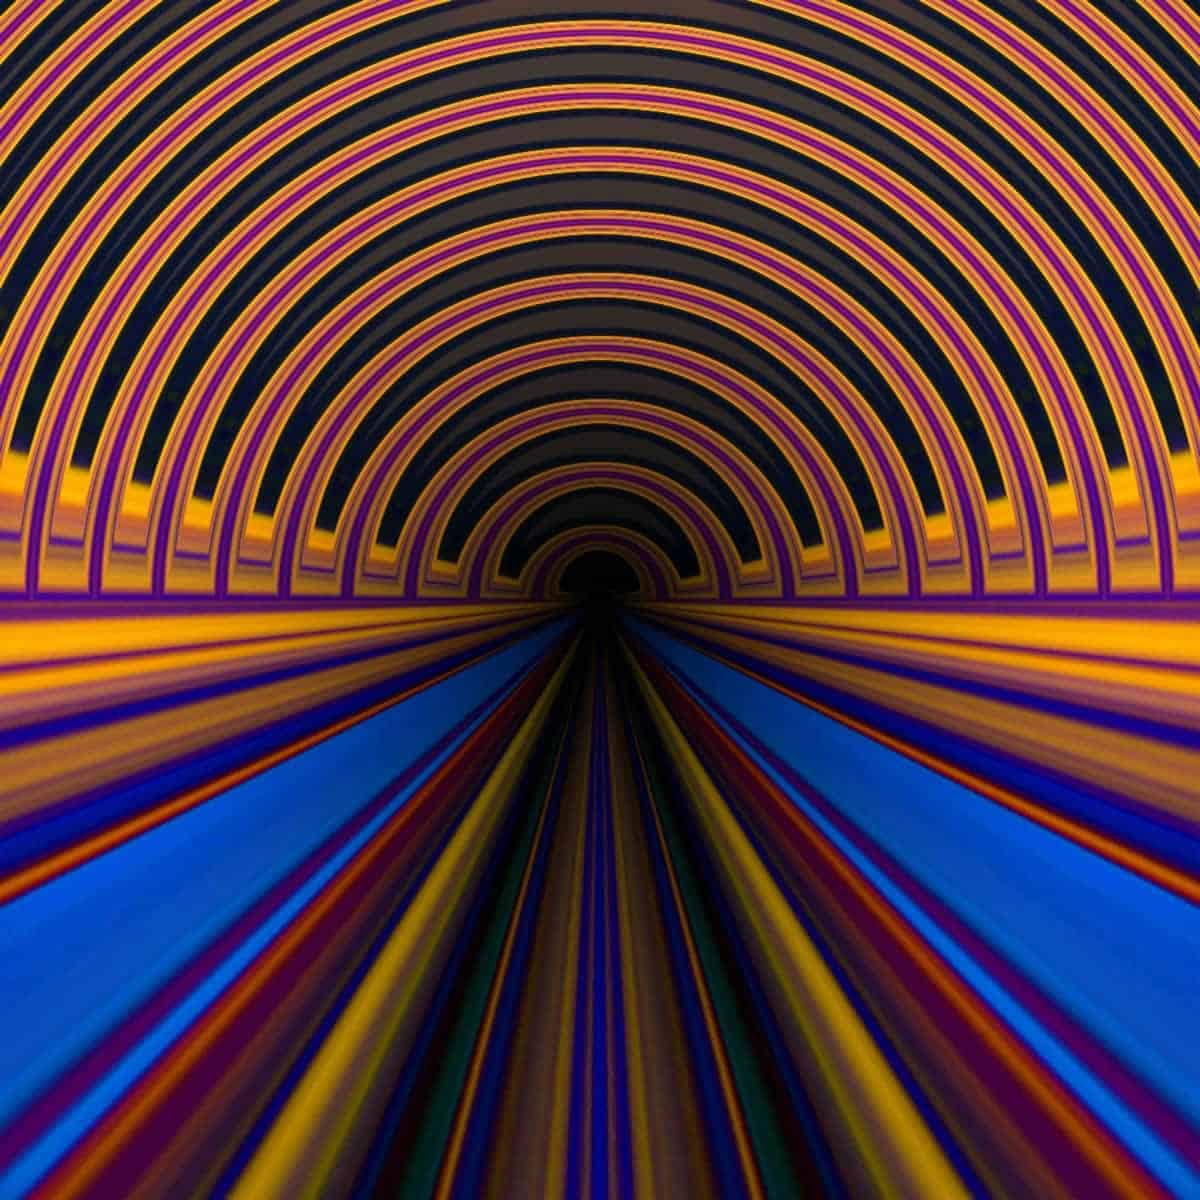 Uma imagem de uma obra de arte em que as cores brilhantes retratam a forma de um túnel.